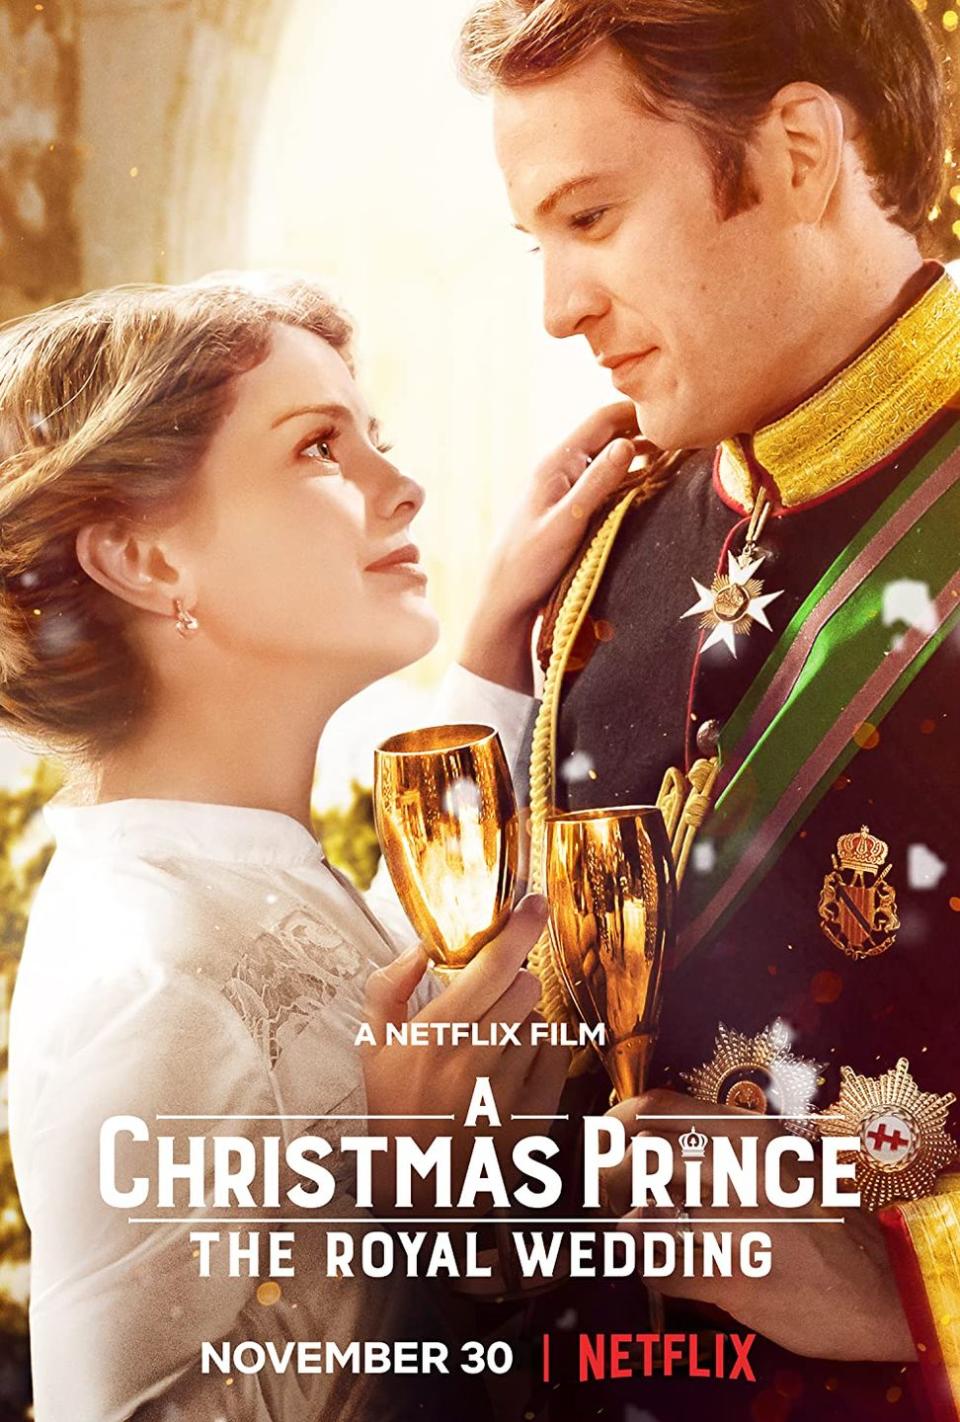 17) A Christmas Prince: The Royal Wedding